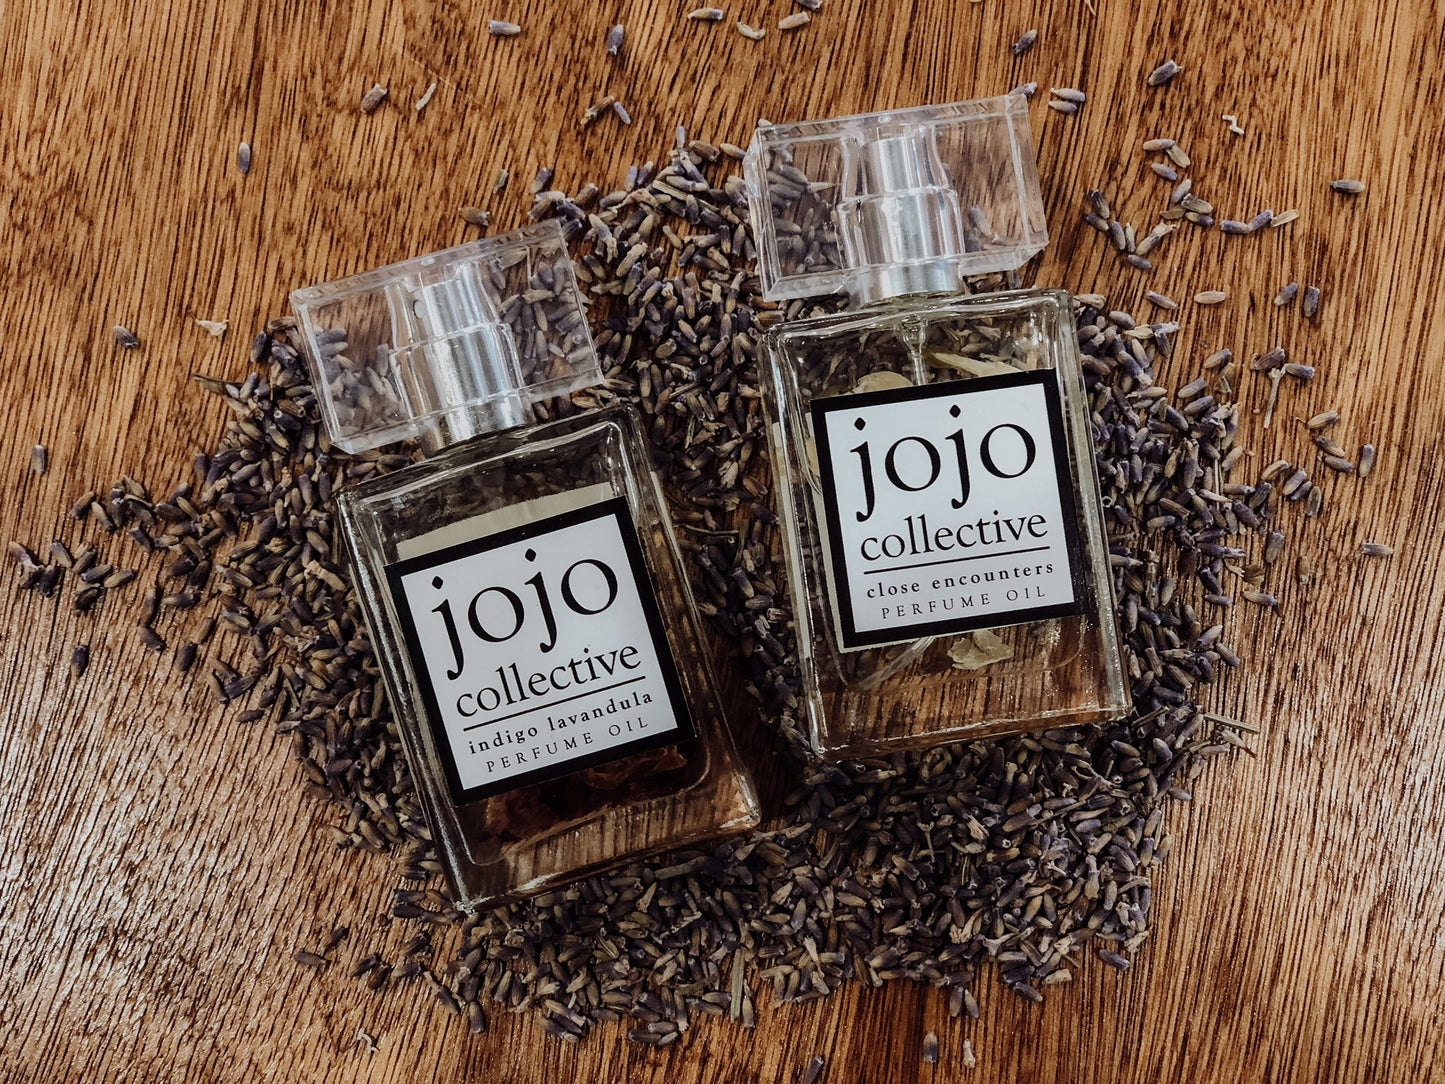 Jojo Perfume Oil - Bottle (30ml)